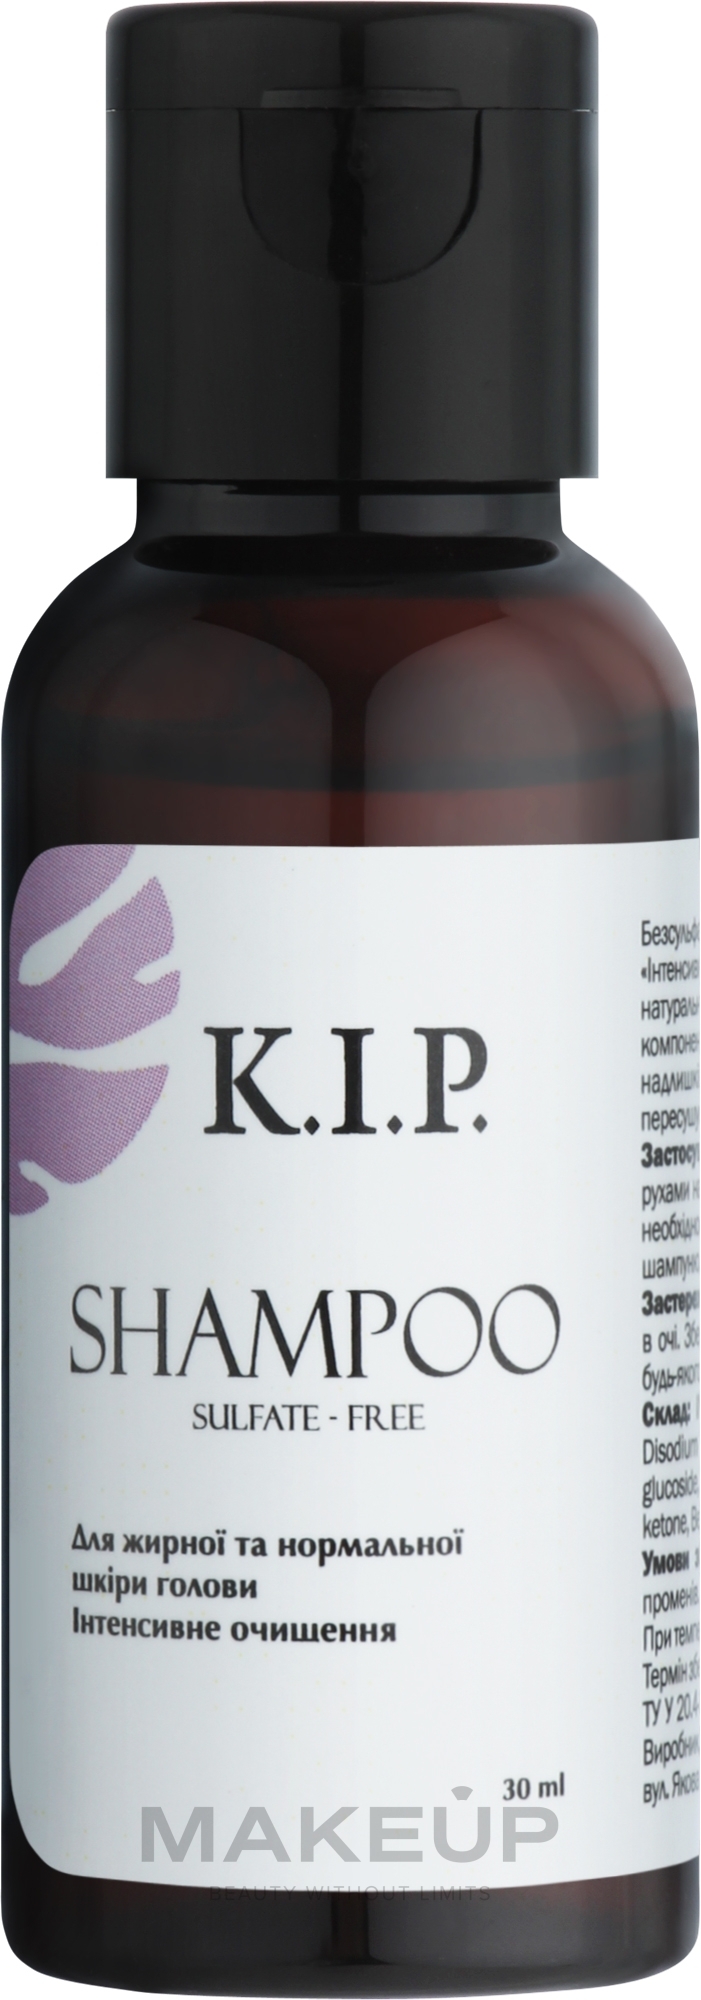 Безсульфатний шампунь для жирної та нормальної шкіри голови "Інтенсивне очищення" - K.I.P. Shampoo (пробник) — фото 30ml